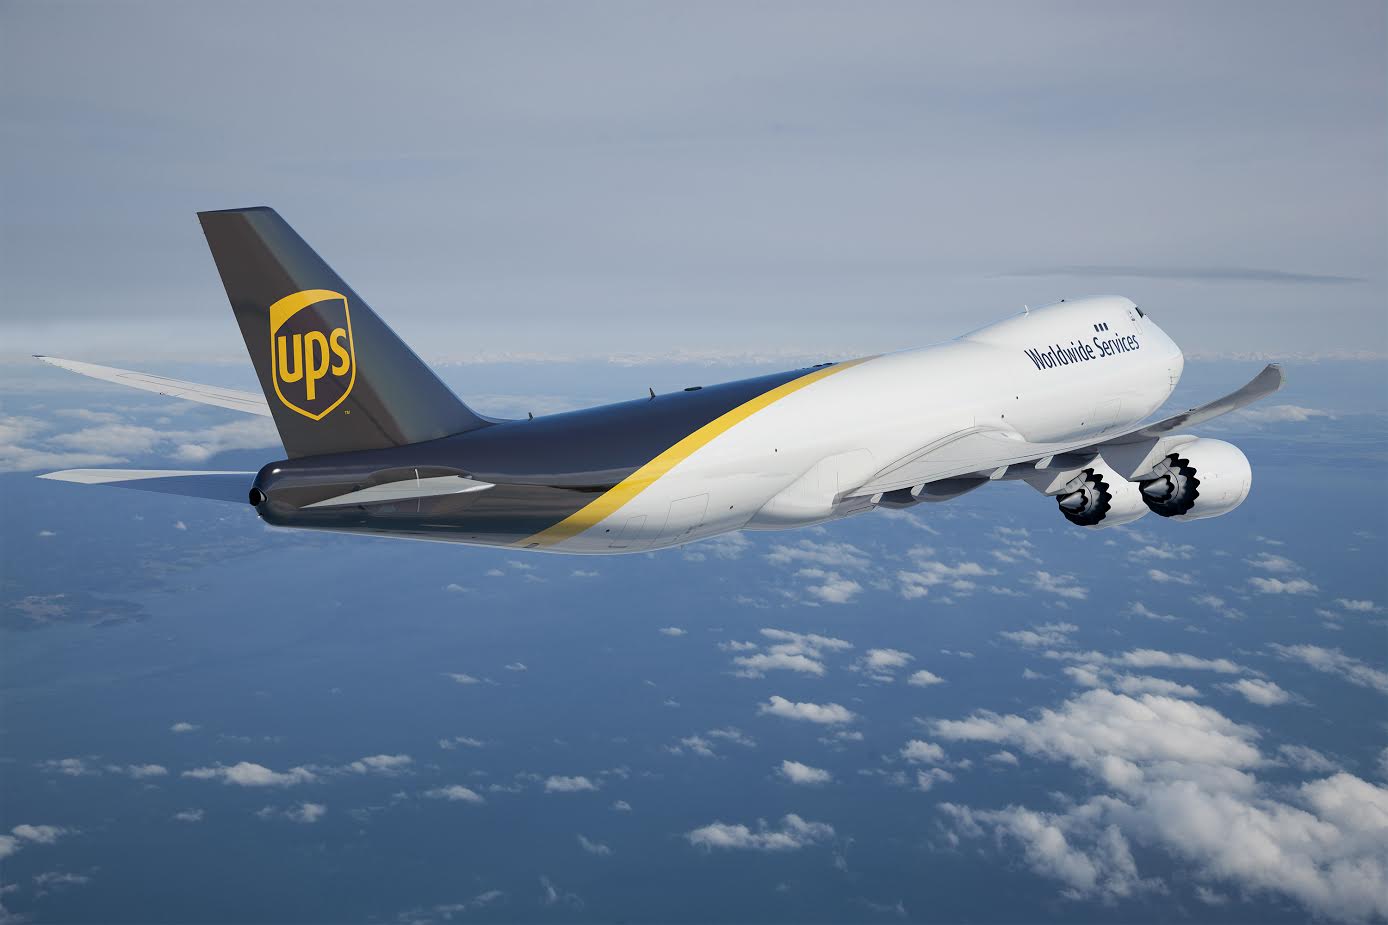 UPS satsar på global frakt - beställer 14 nya jumboplan